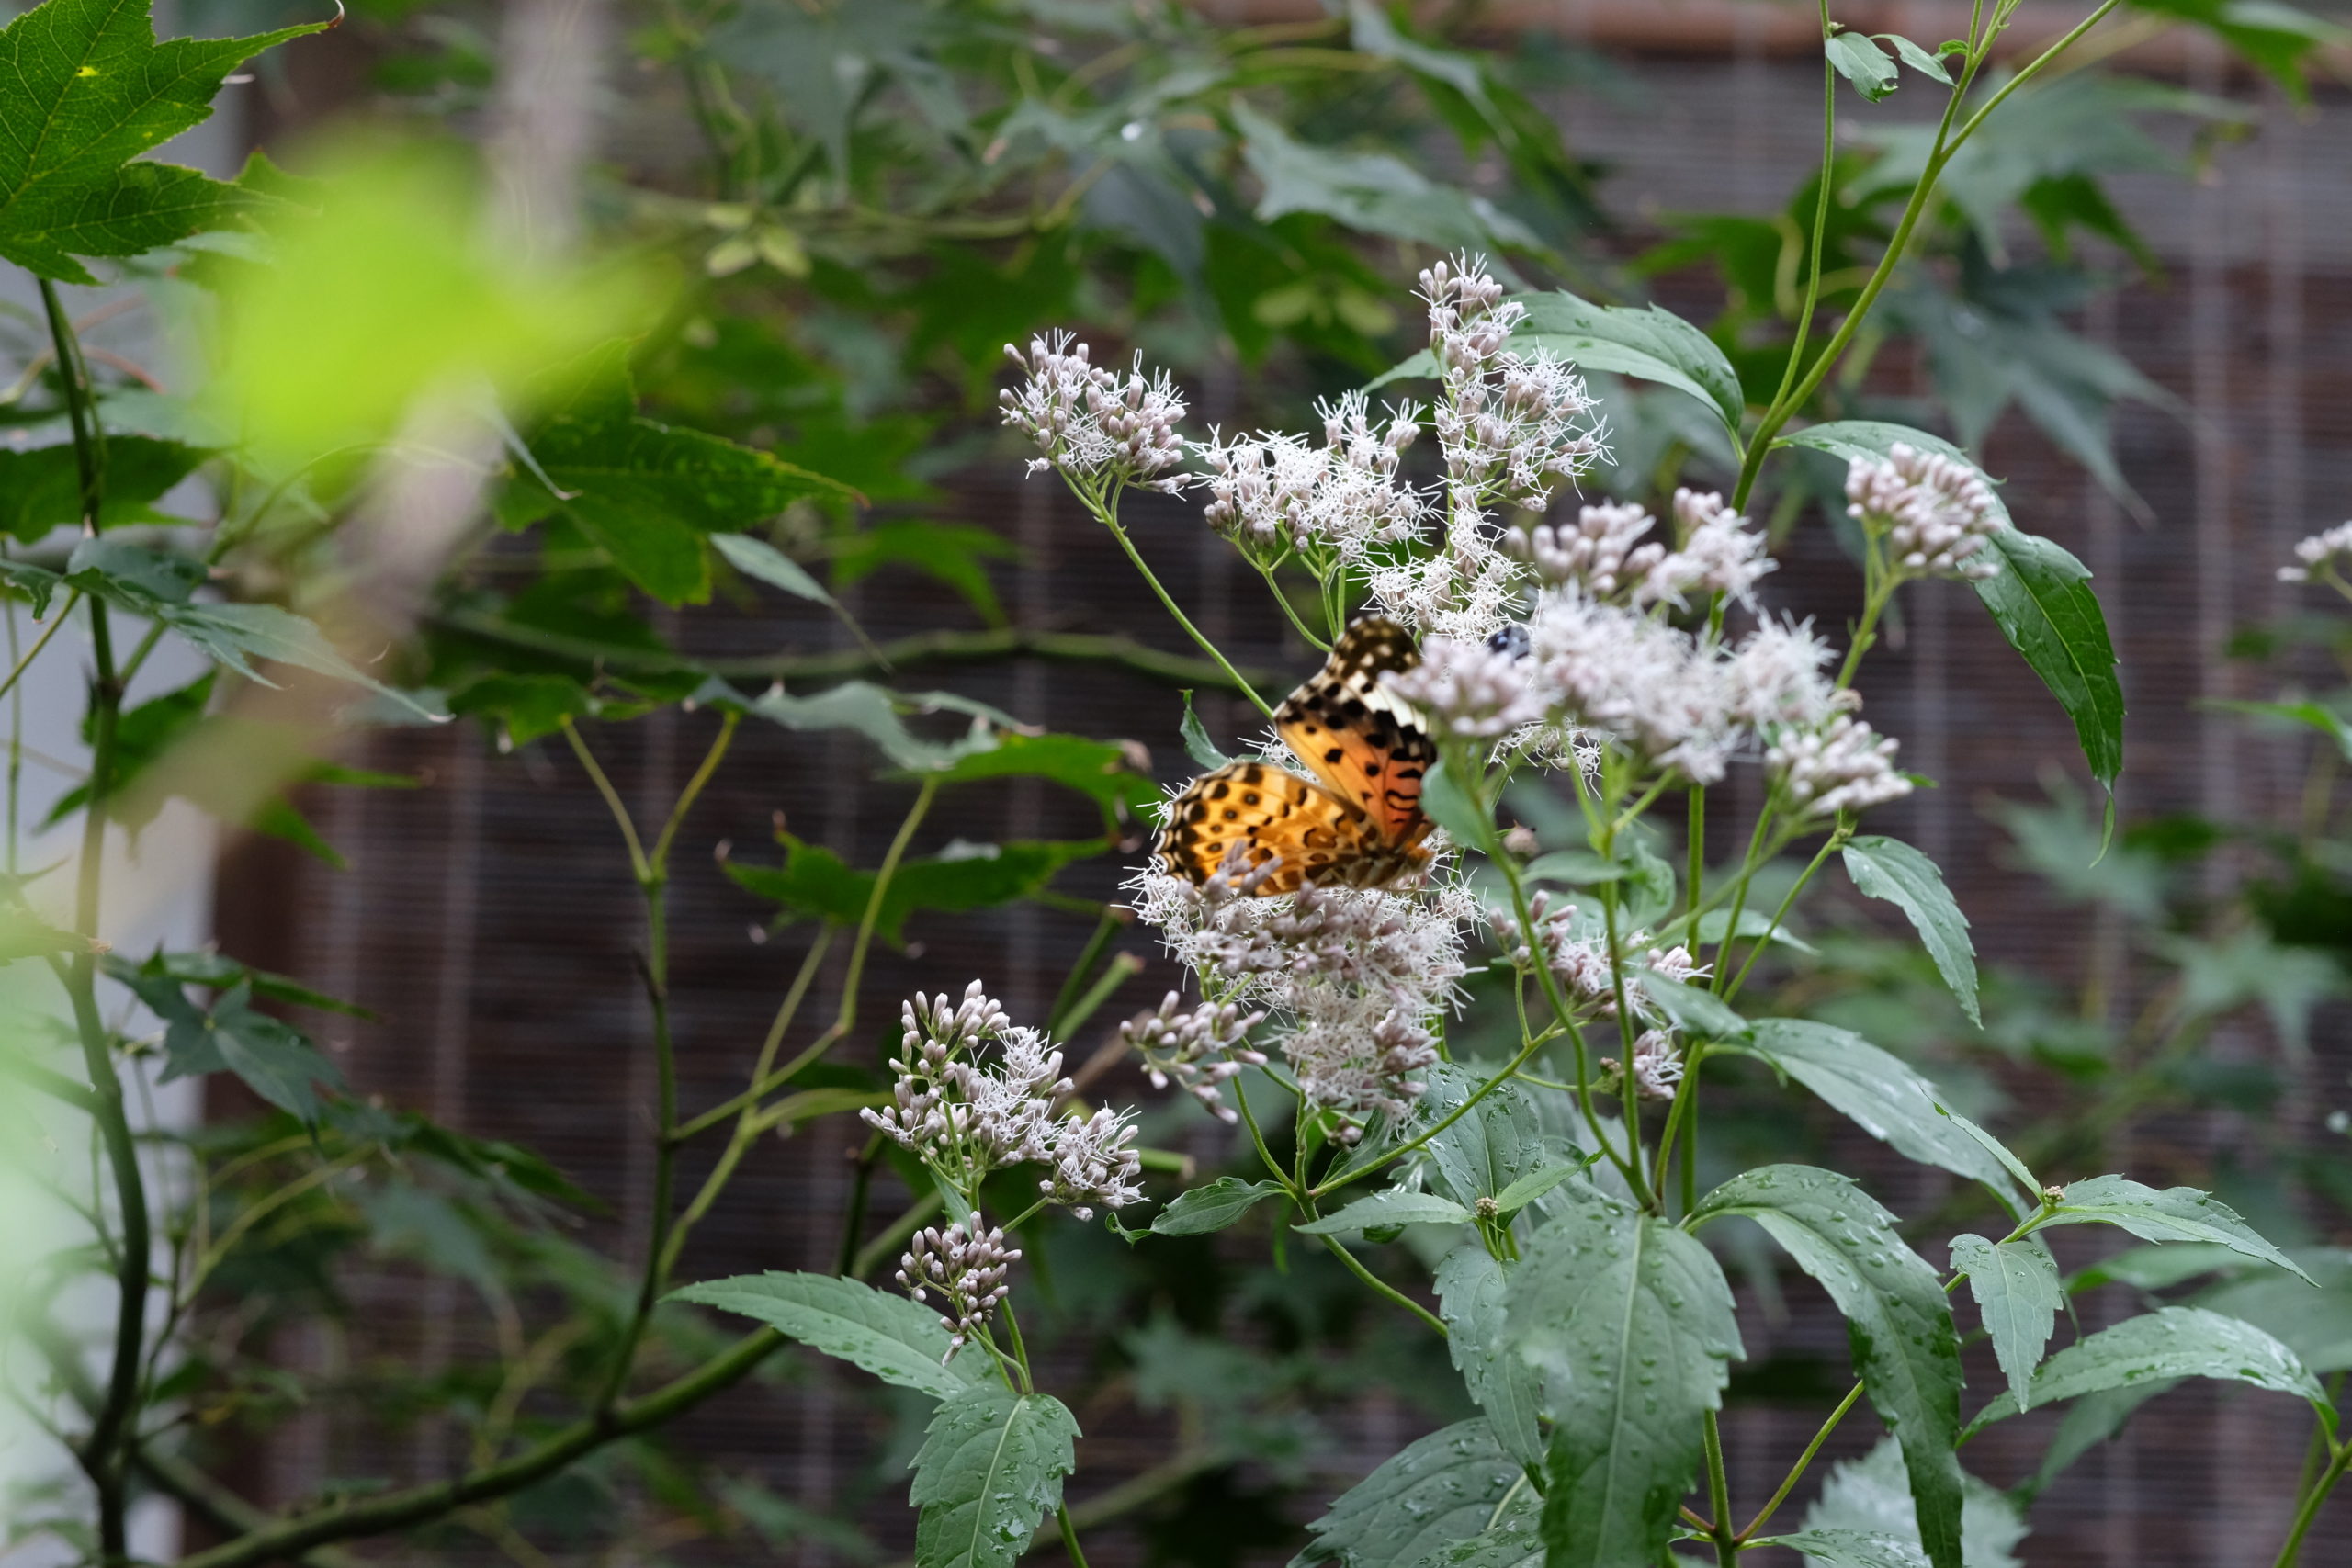 中庭に咲いた藤袴とツマグロヒョウモンの蝶